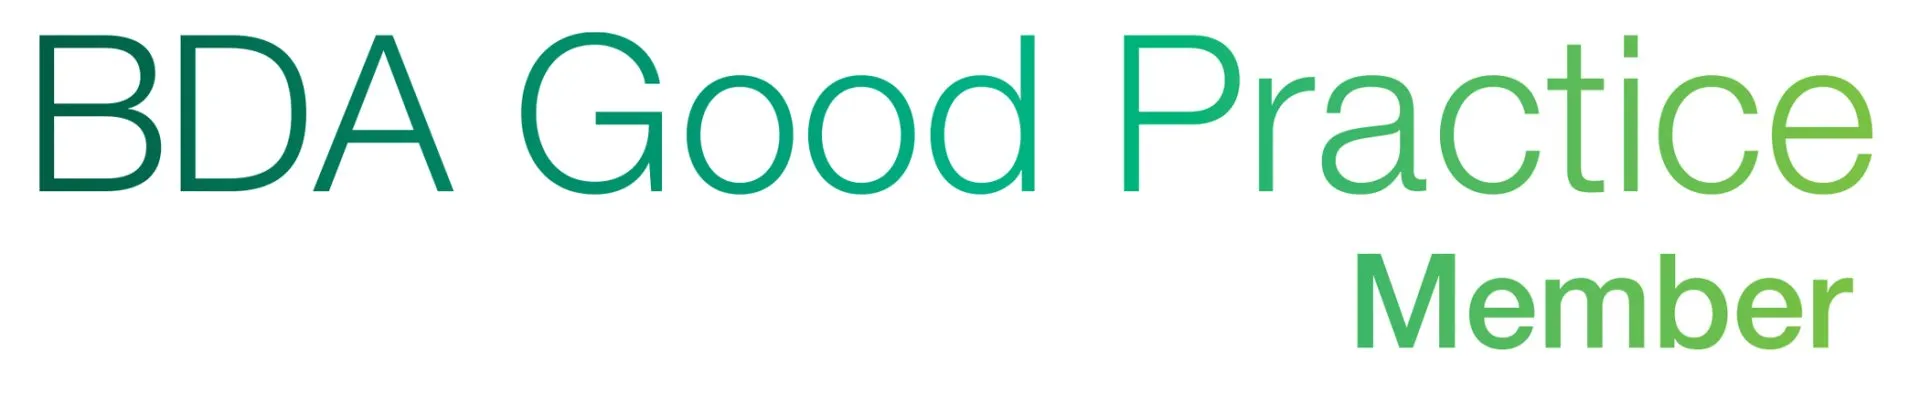 BDA_Good_Practice_logo